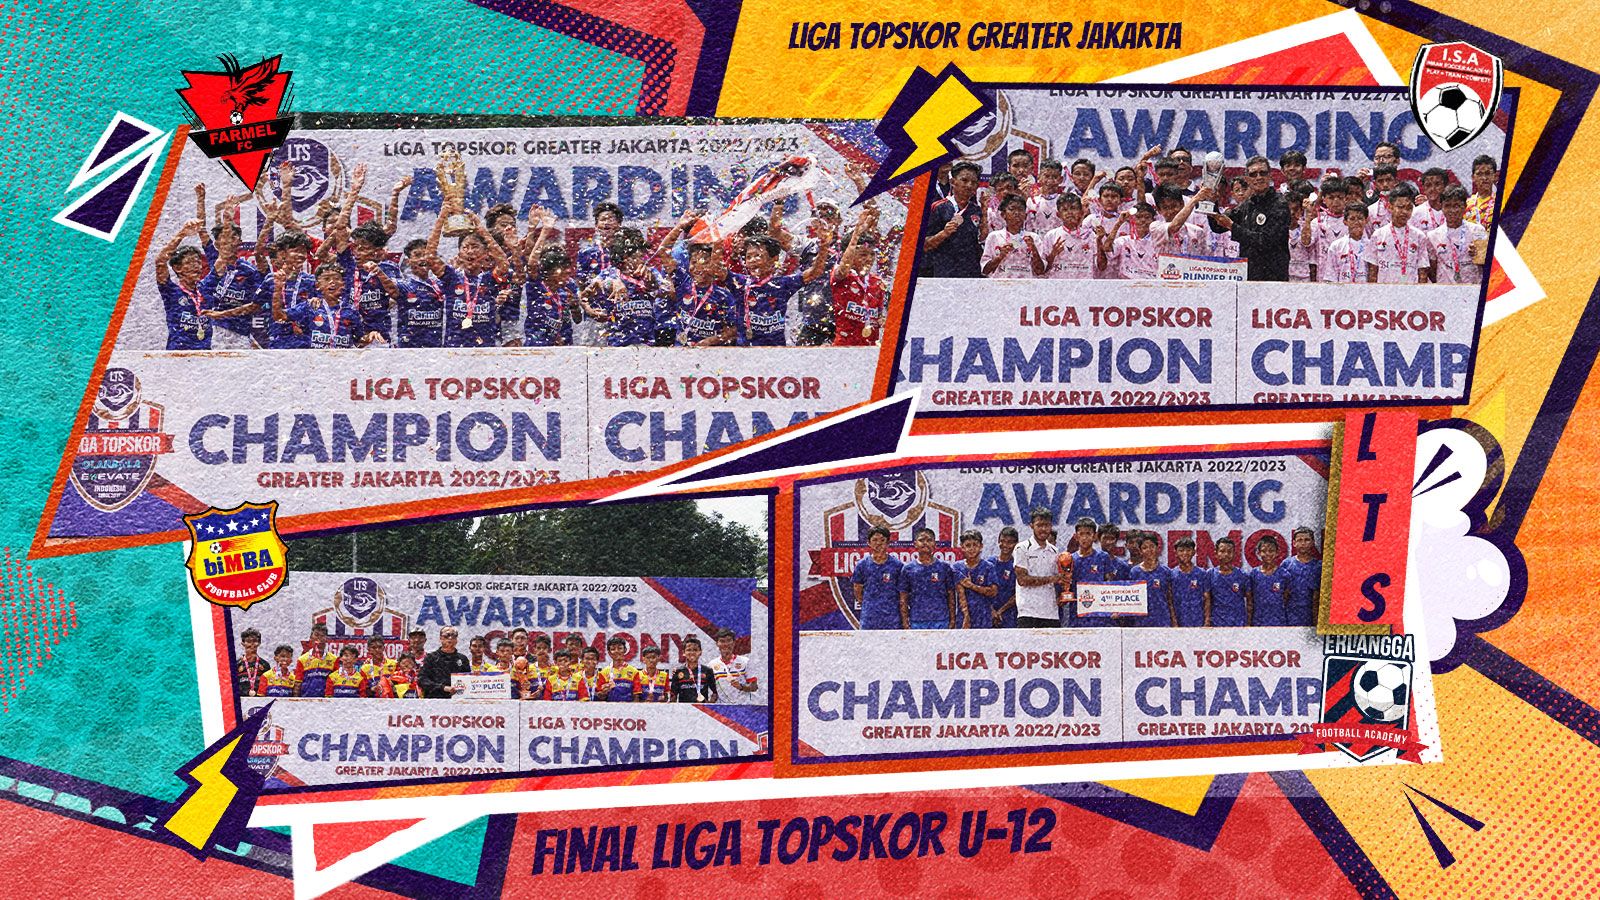 Farmel FC raih gelar juar Liga TopSkor U-12 2022-2023, Diklat ISA jadi runner up, dan tempat ketiga diamankan Bimba Aiueo SS. (Grafis: Liga TopSkor/ Ari Rahmat Hidayat)